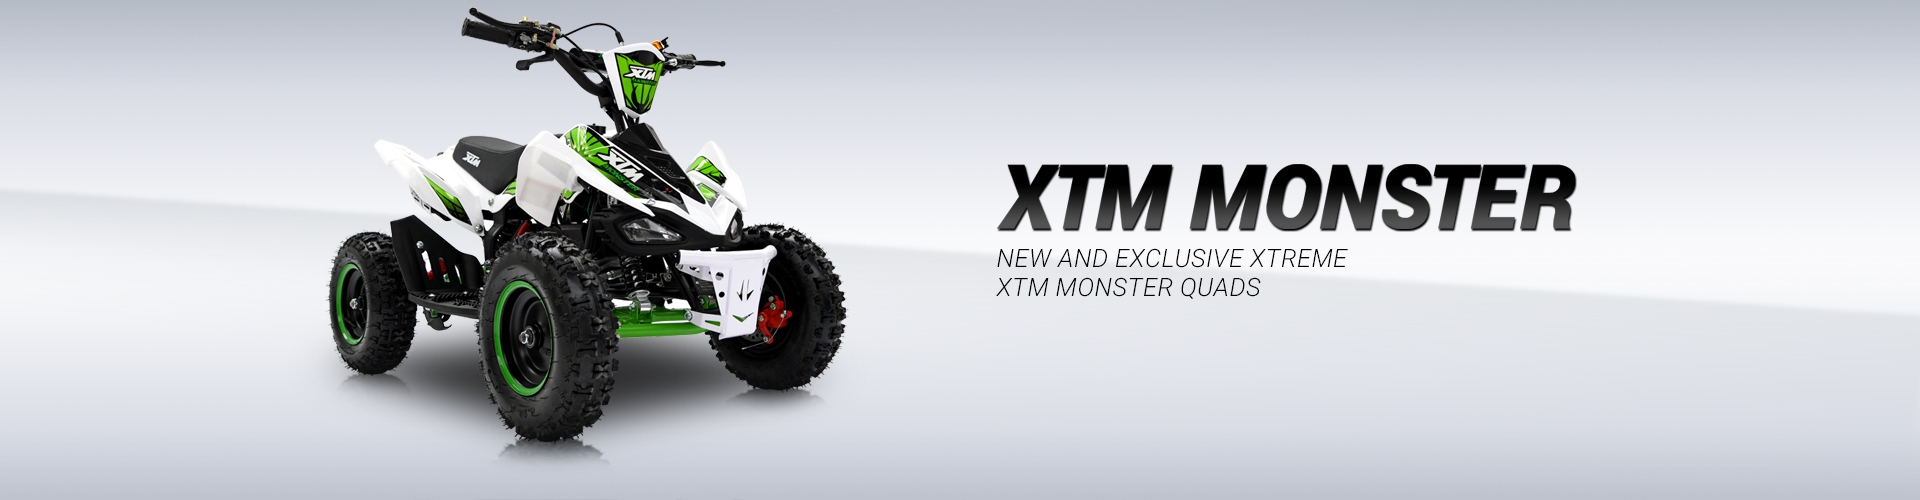 XTM Monster Quad 50CC